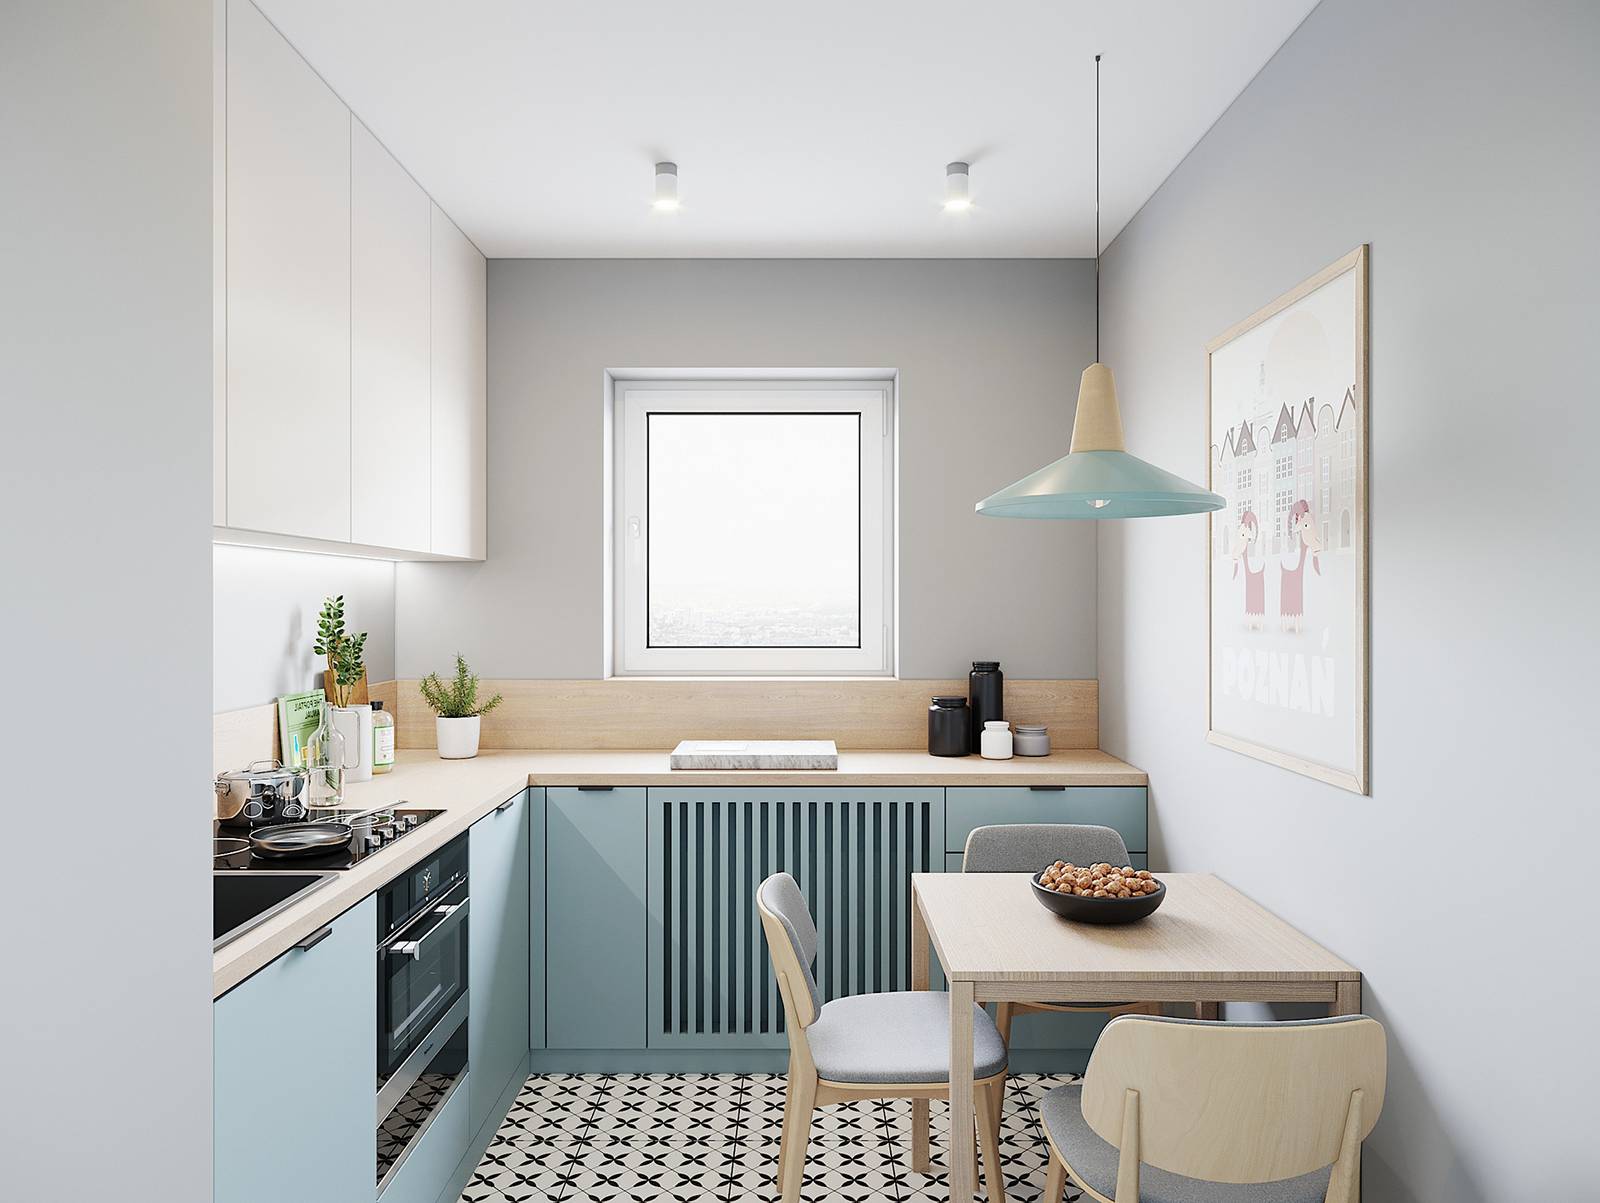 Phòng bếp và khu vực ăn uống sử dụng gam màu trắng-xám làm chủ đạo, thêm vào tủ bếp kiểu chữ L sơn màu xanh pastel dịu mắt bên ô cửa sổ xinh đẹp.